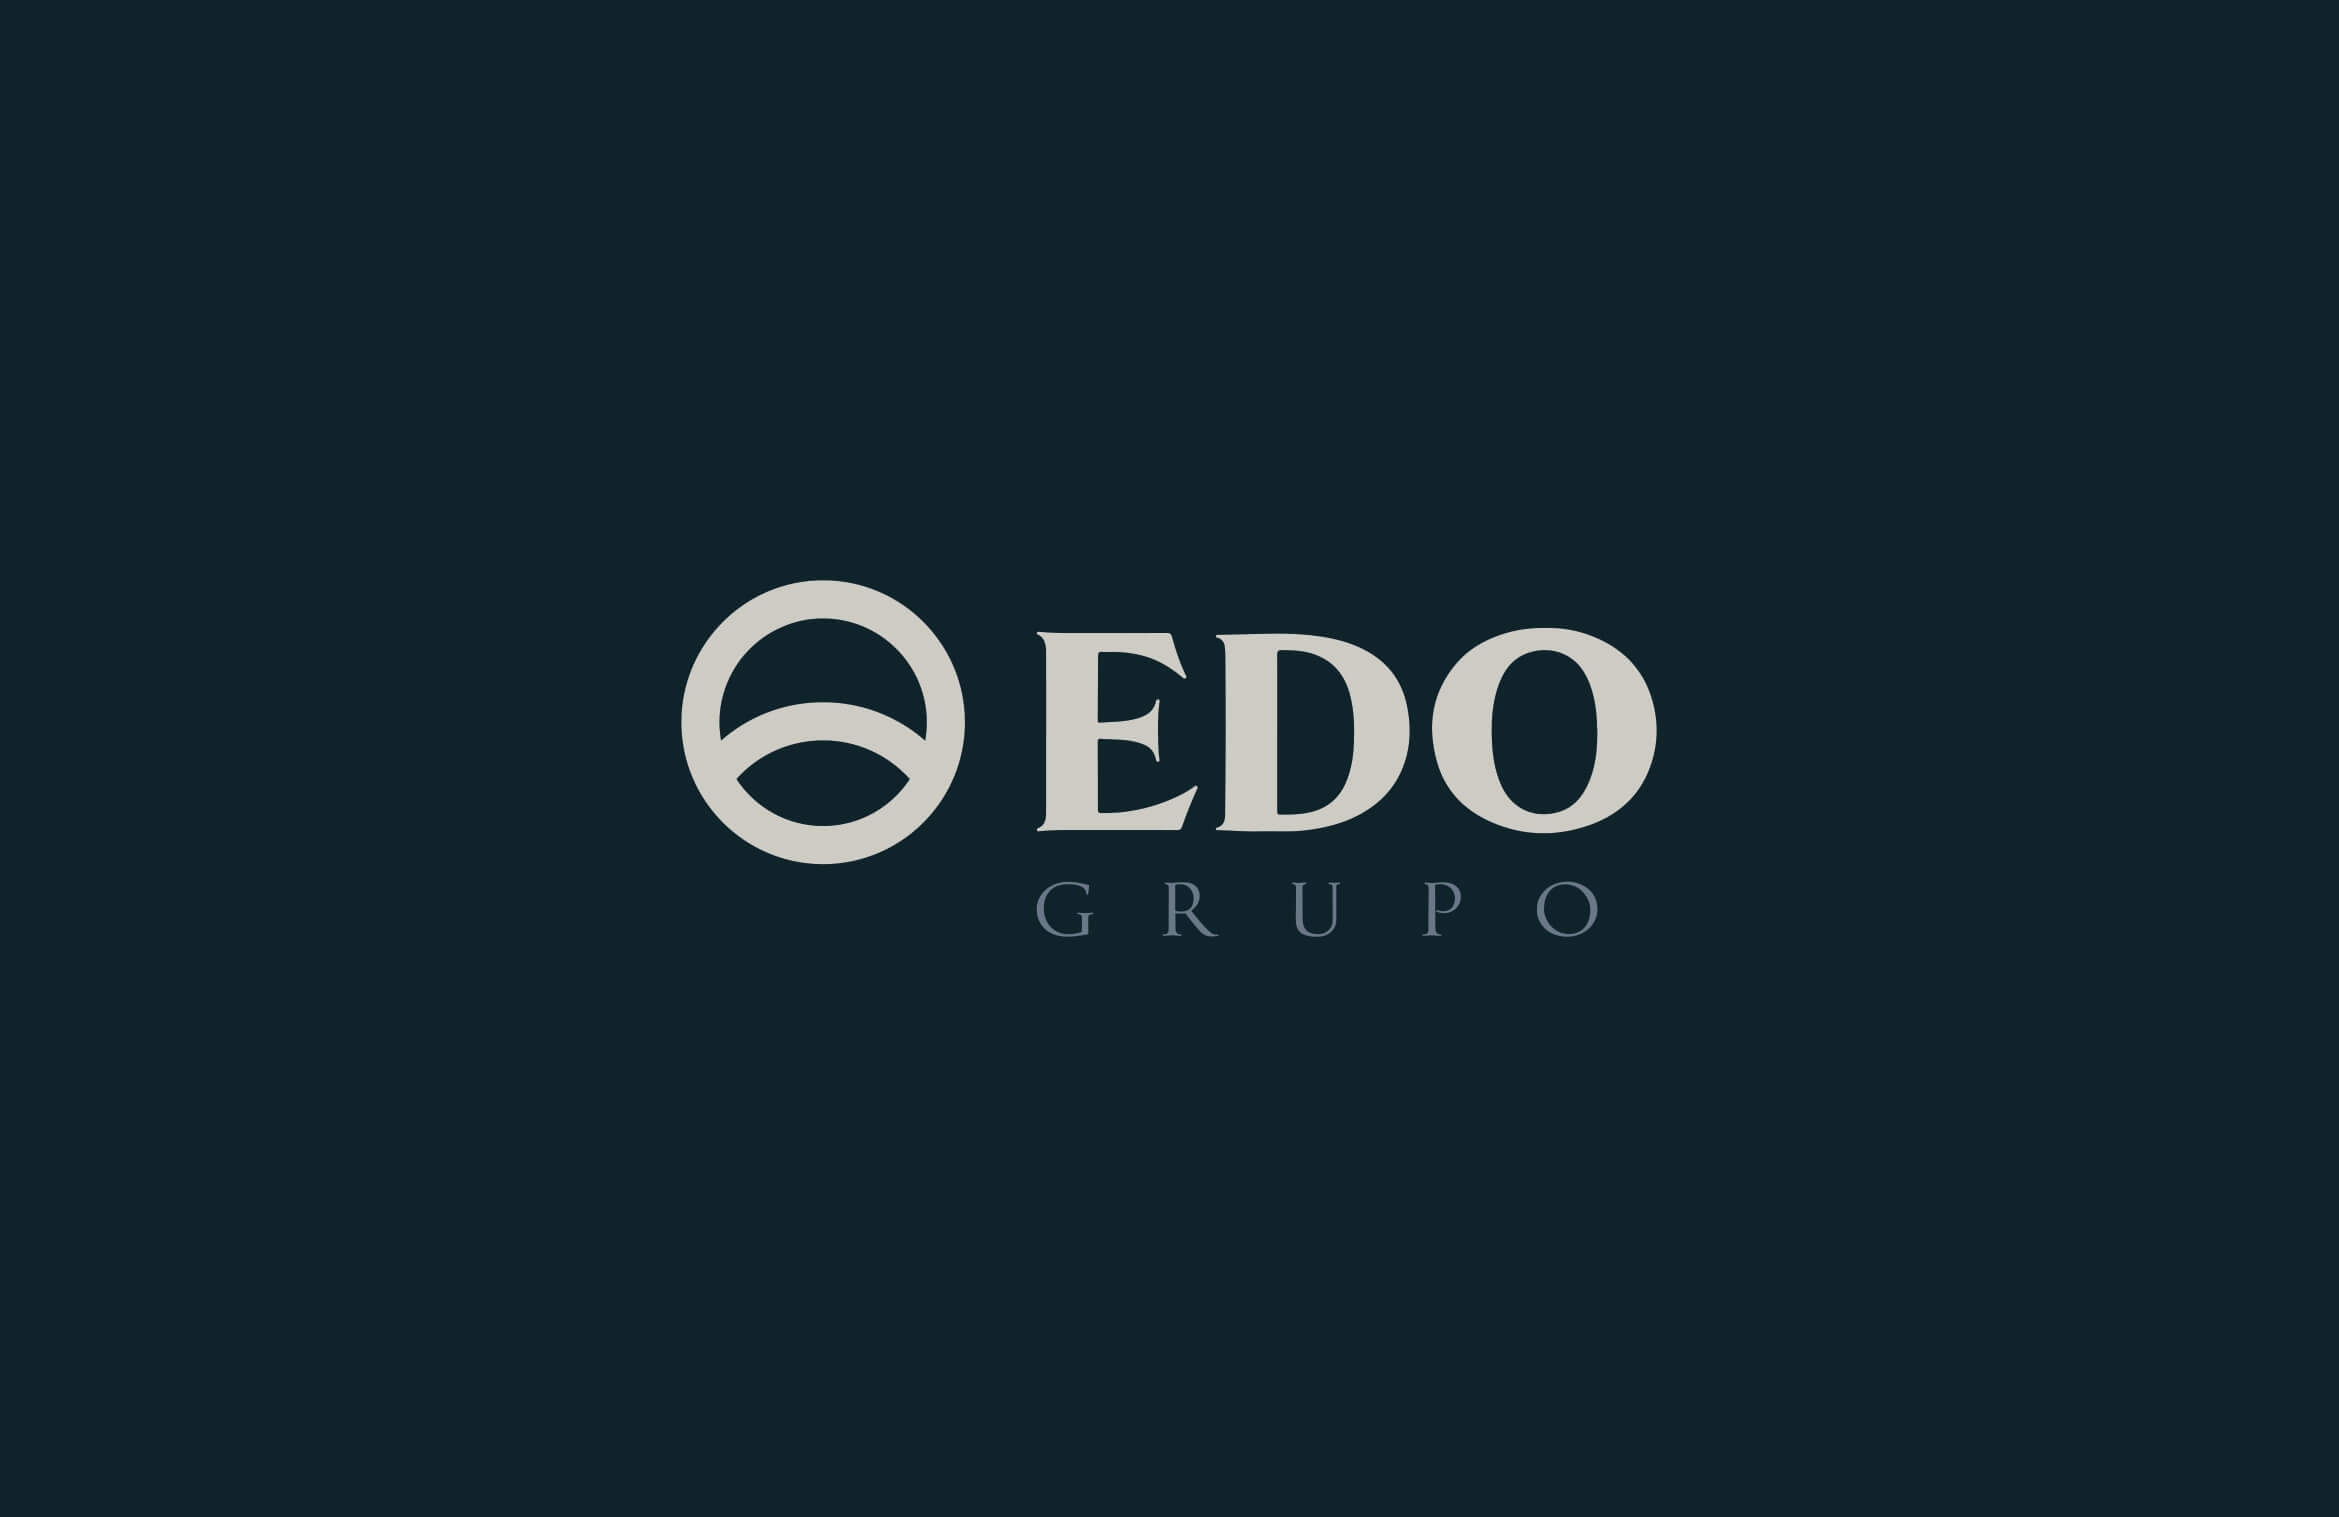 Grupo Edo | Branding